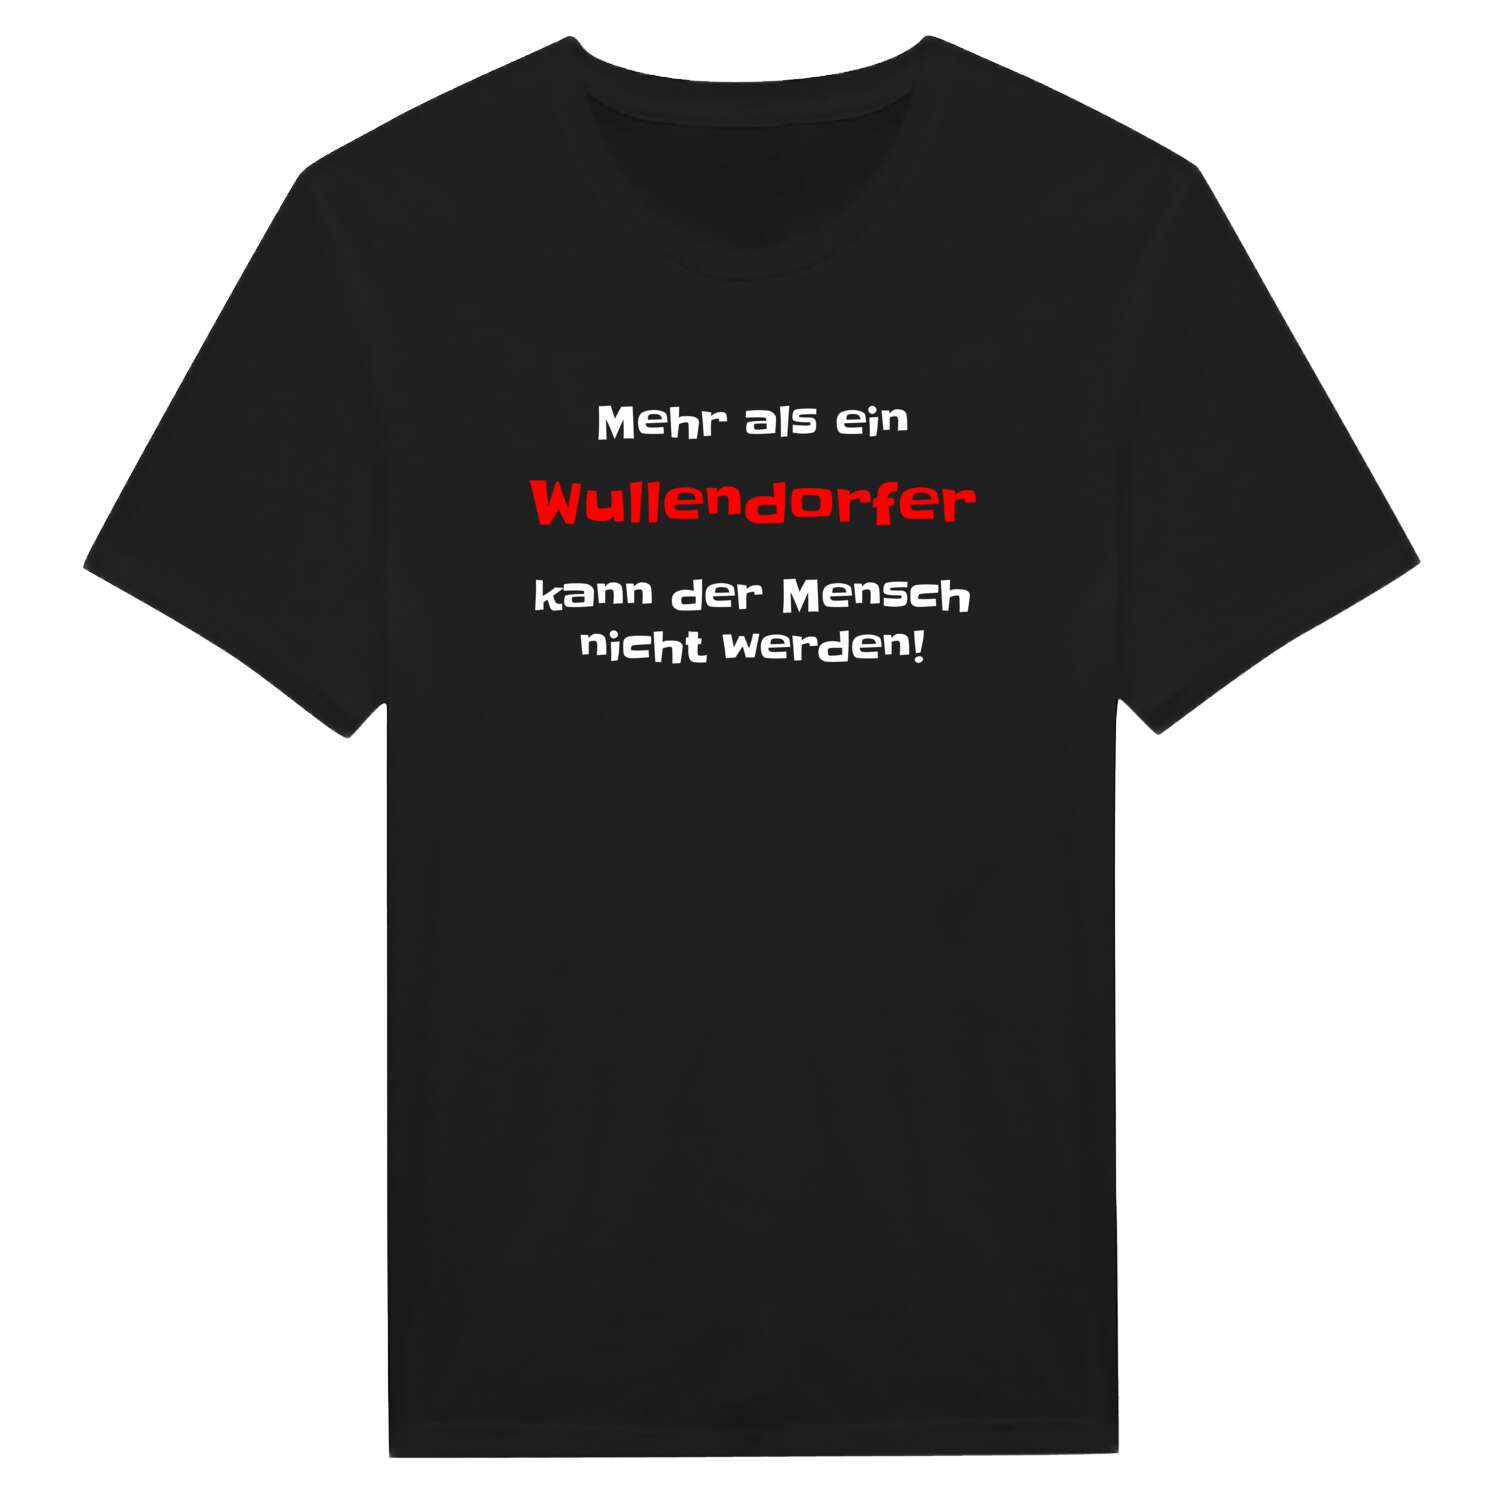 Wullendorf T-Shirt »Mehr als ein«